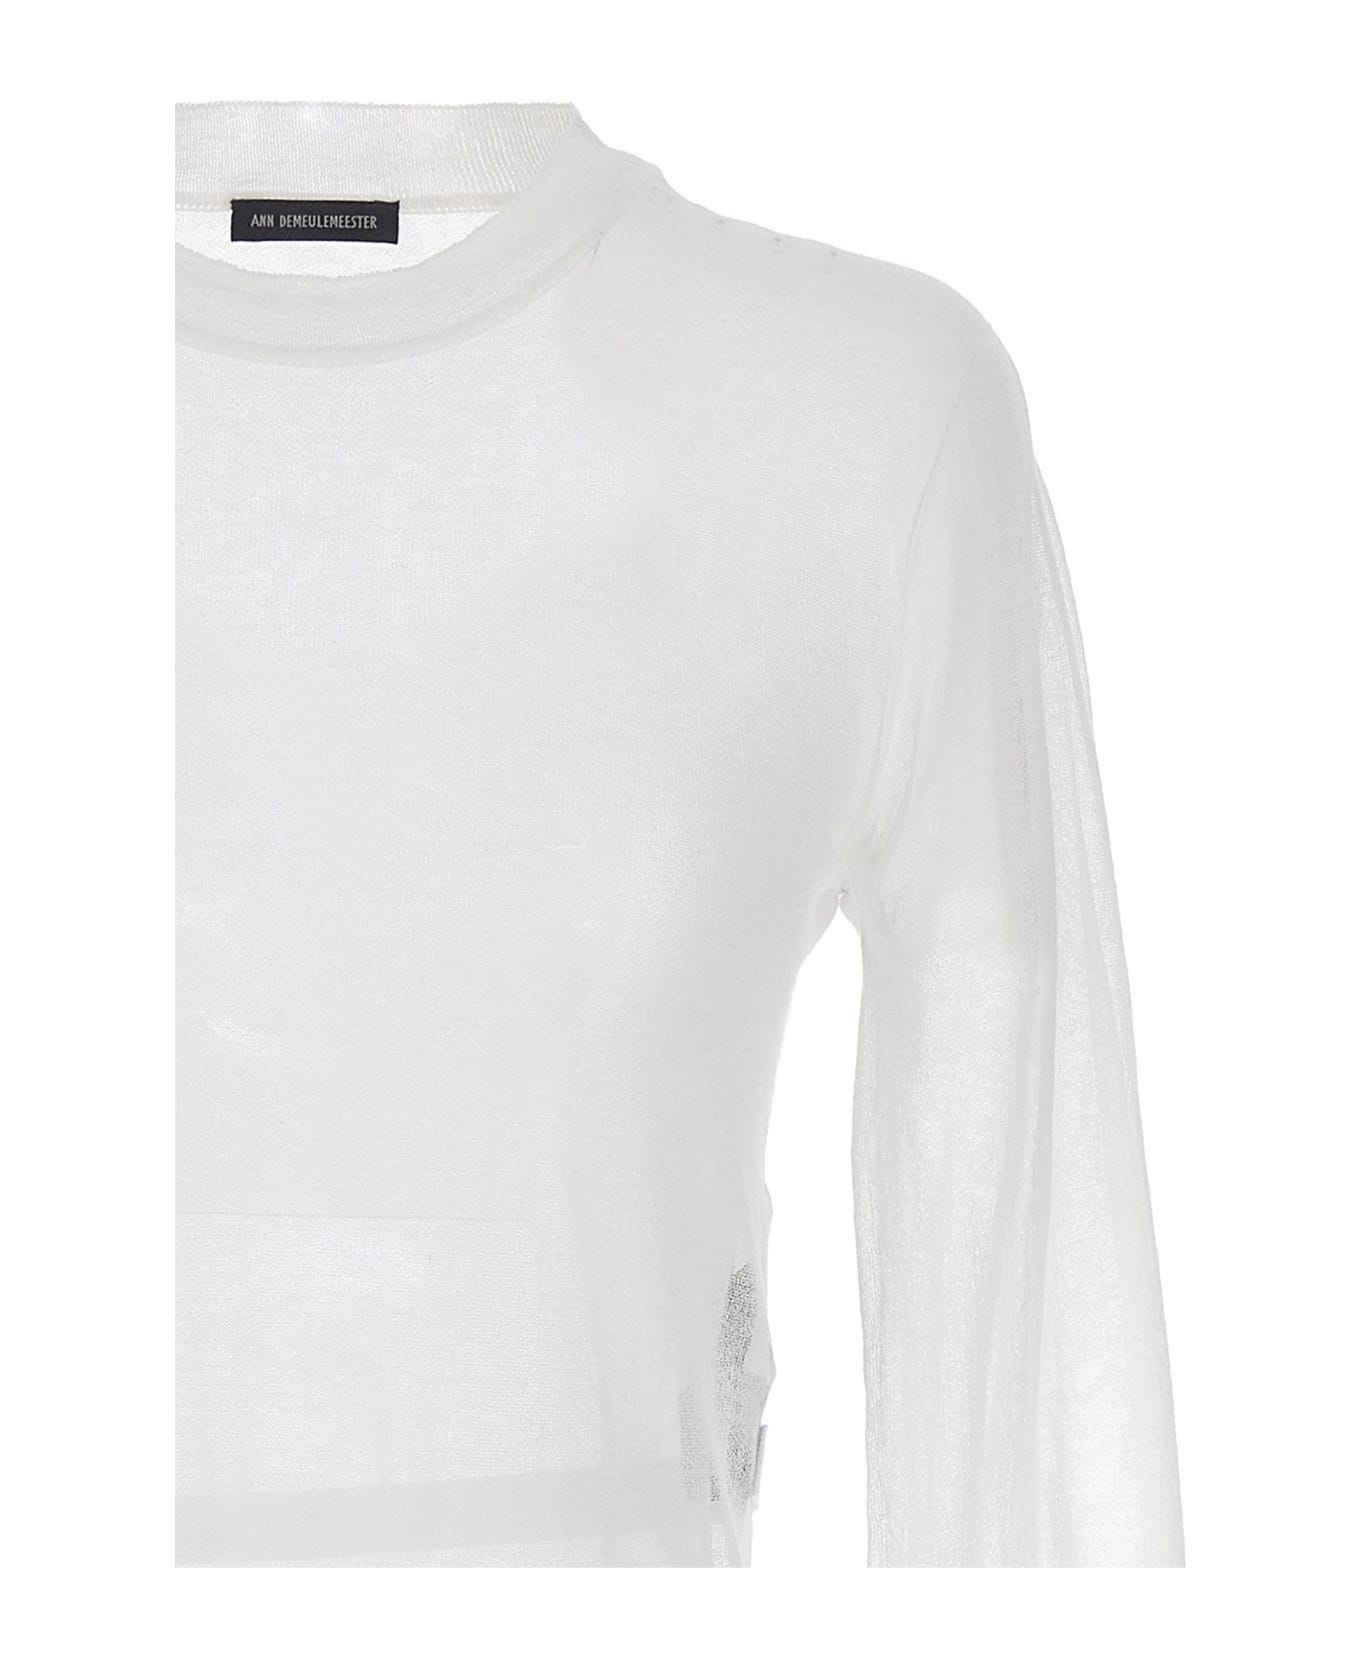 Ann Demeulemeester 'blion' Sweater - White ニットウェア